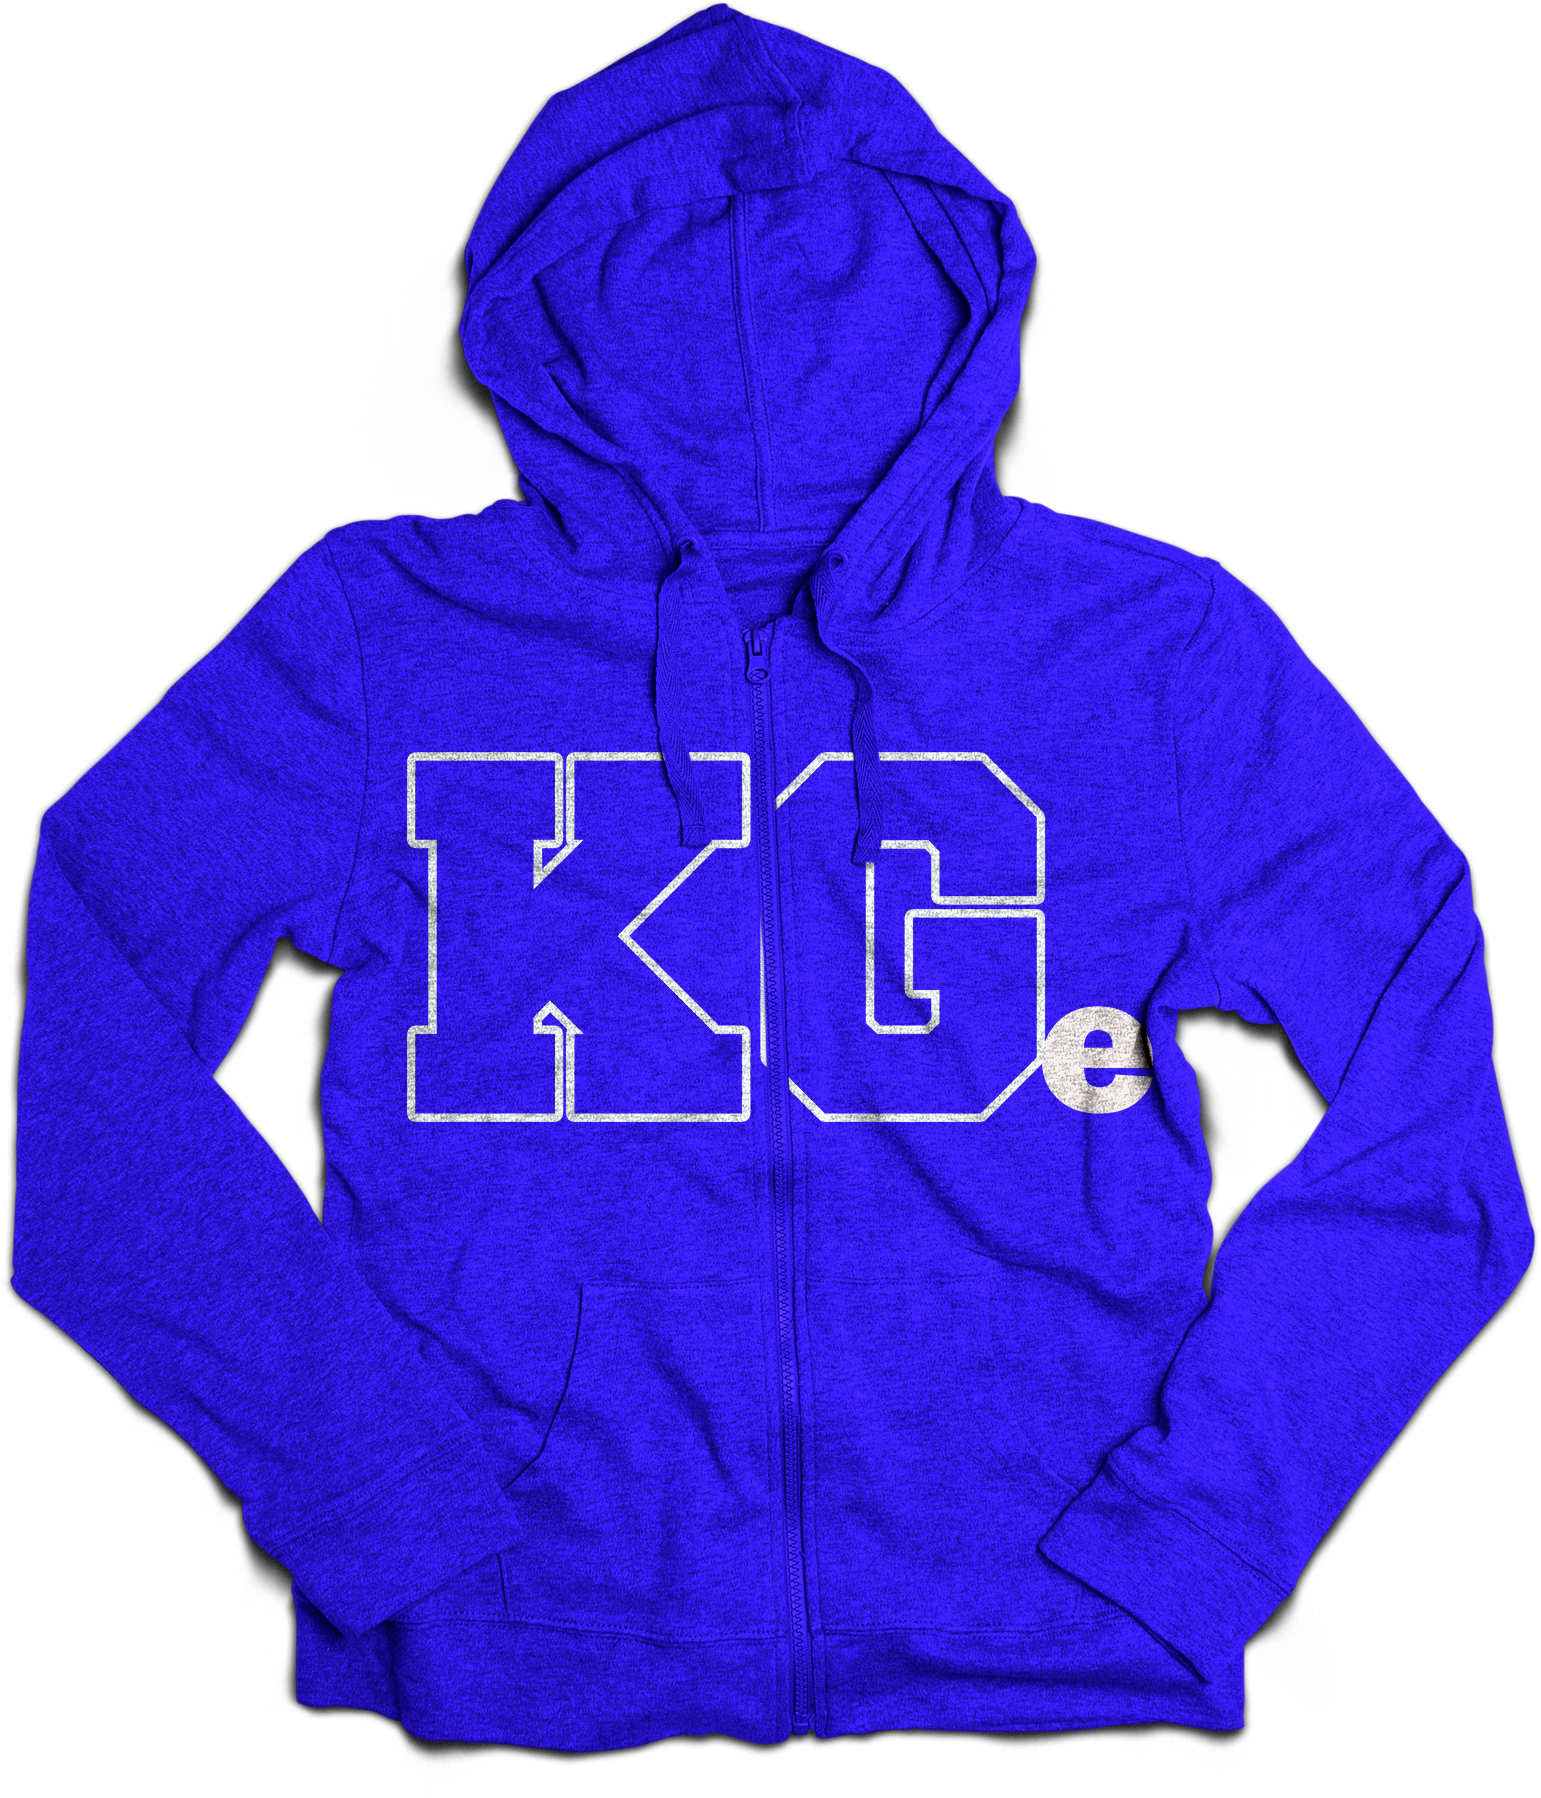 KG Blue Hooded Zip Sweatshirt